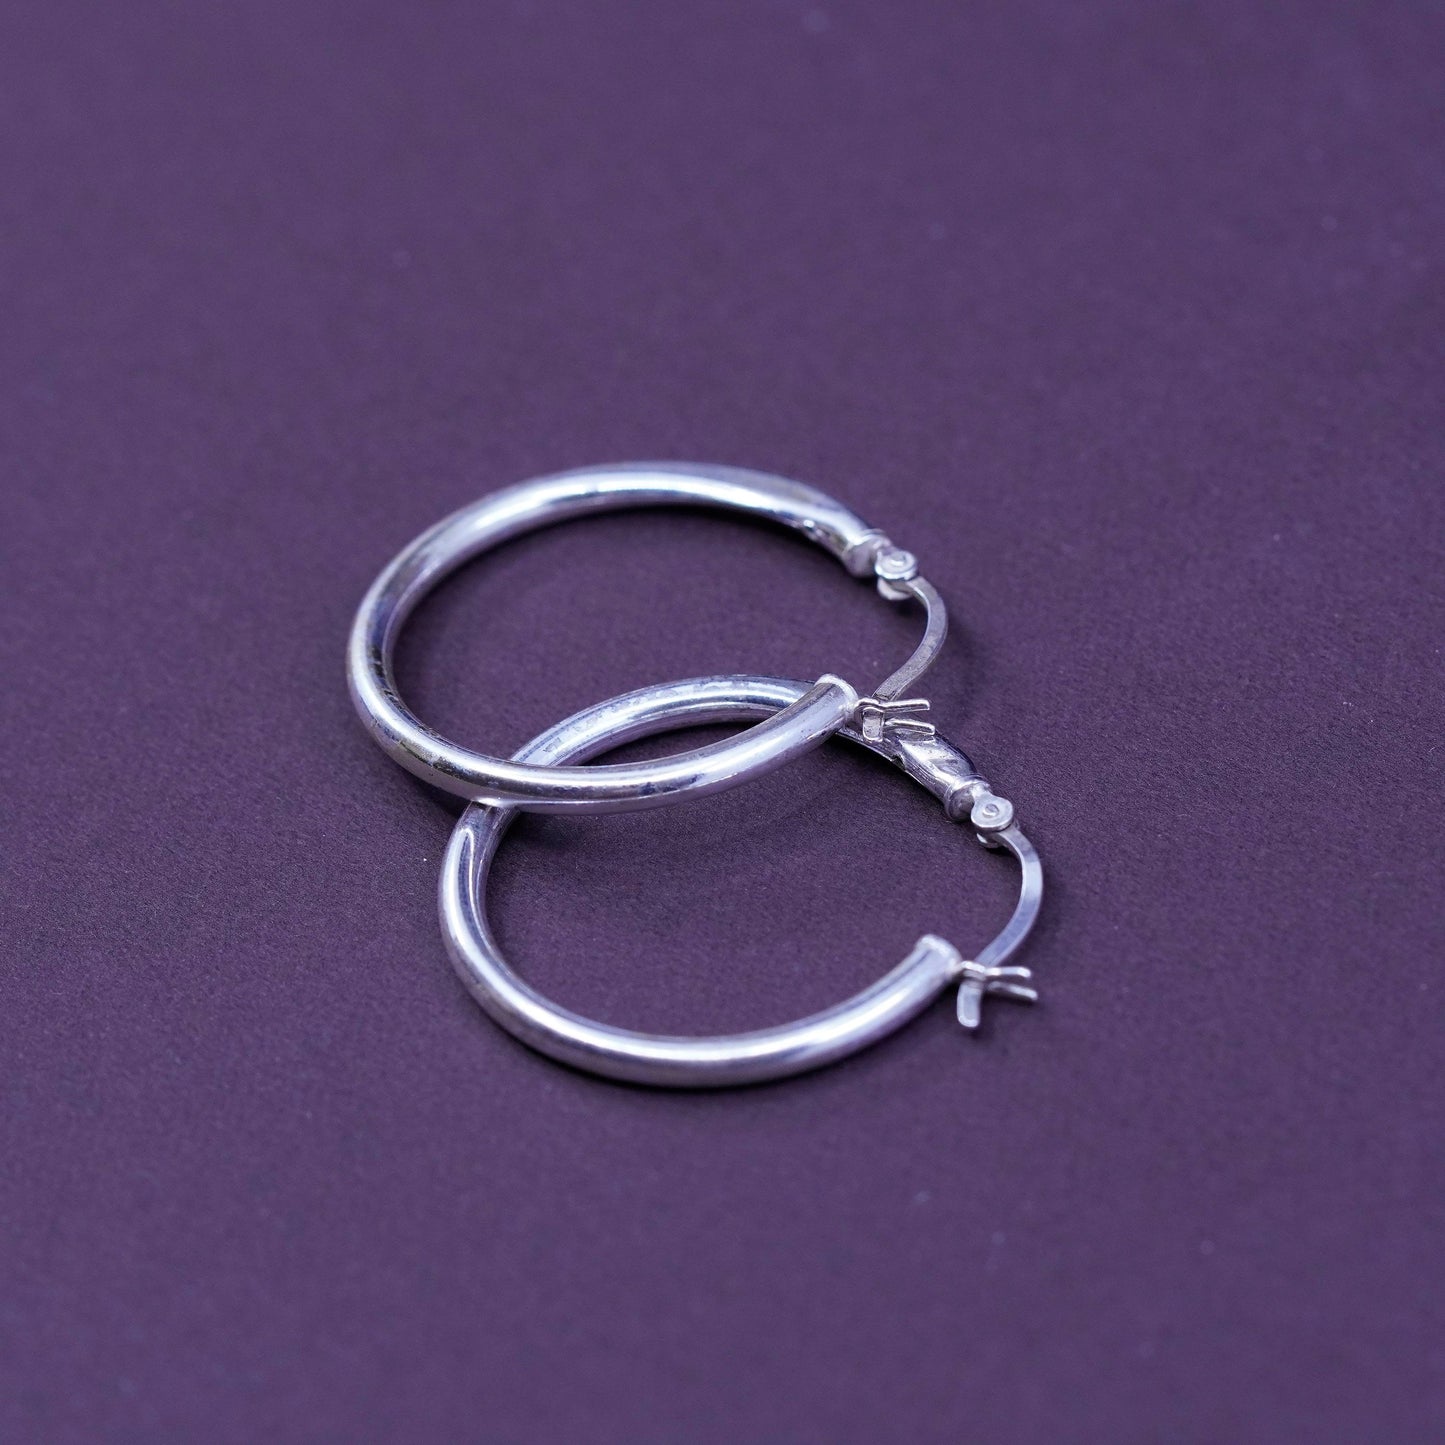 1”, Vintage Sterling silver handmade earrings, 925 silver hoops